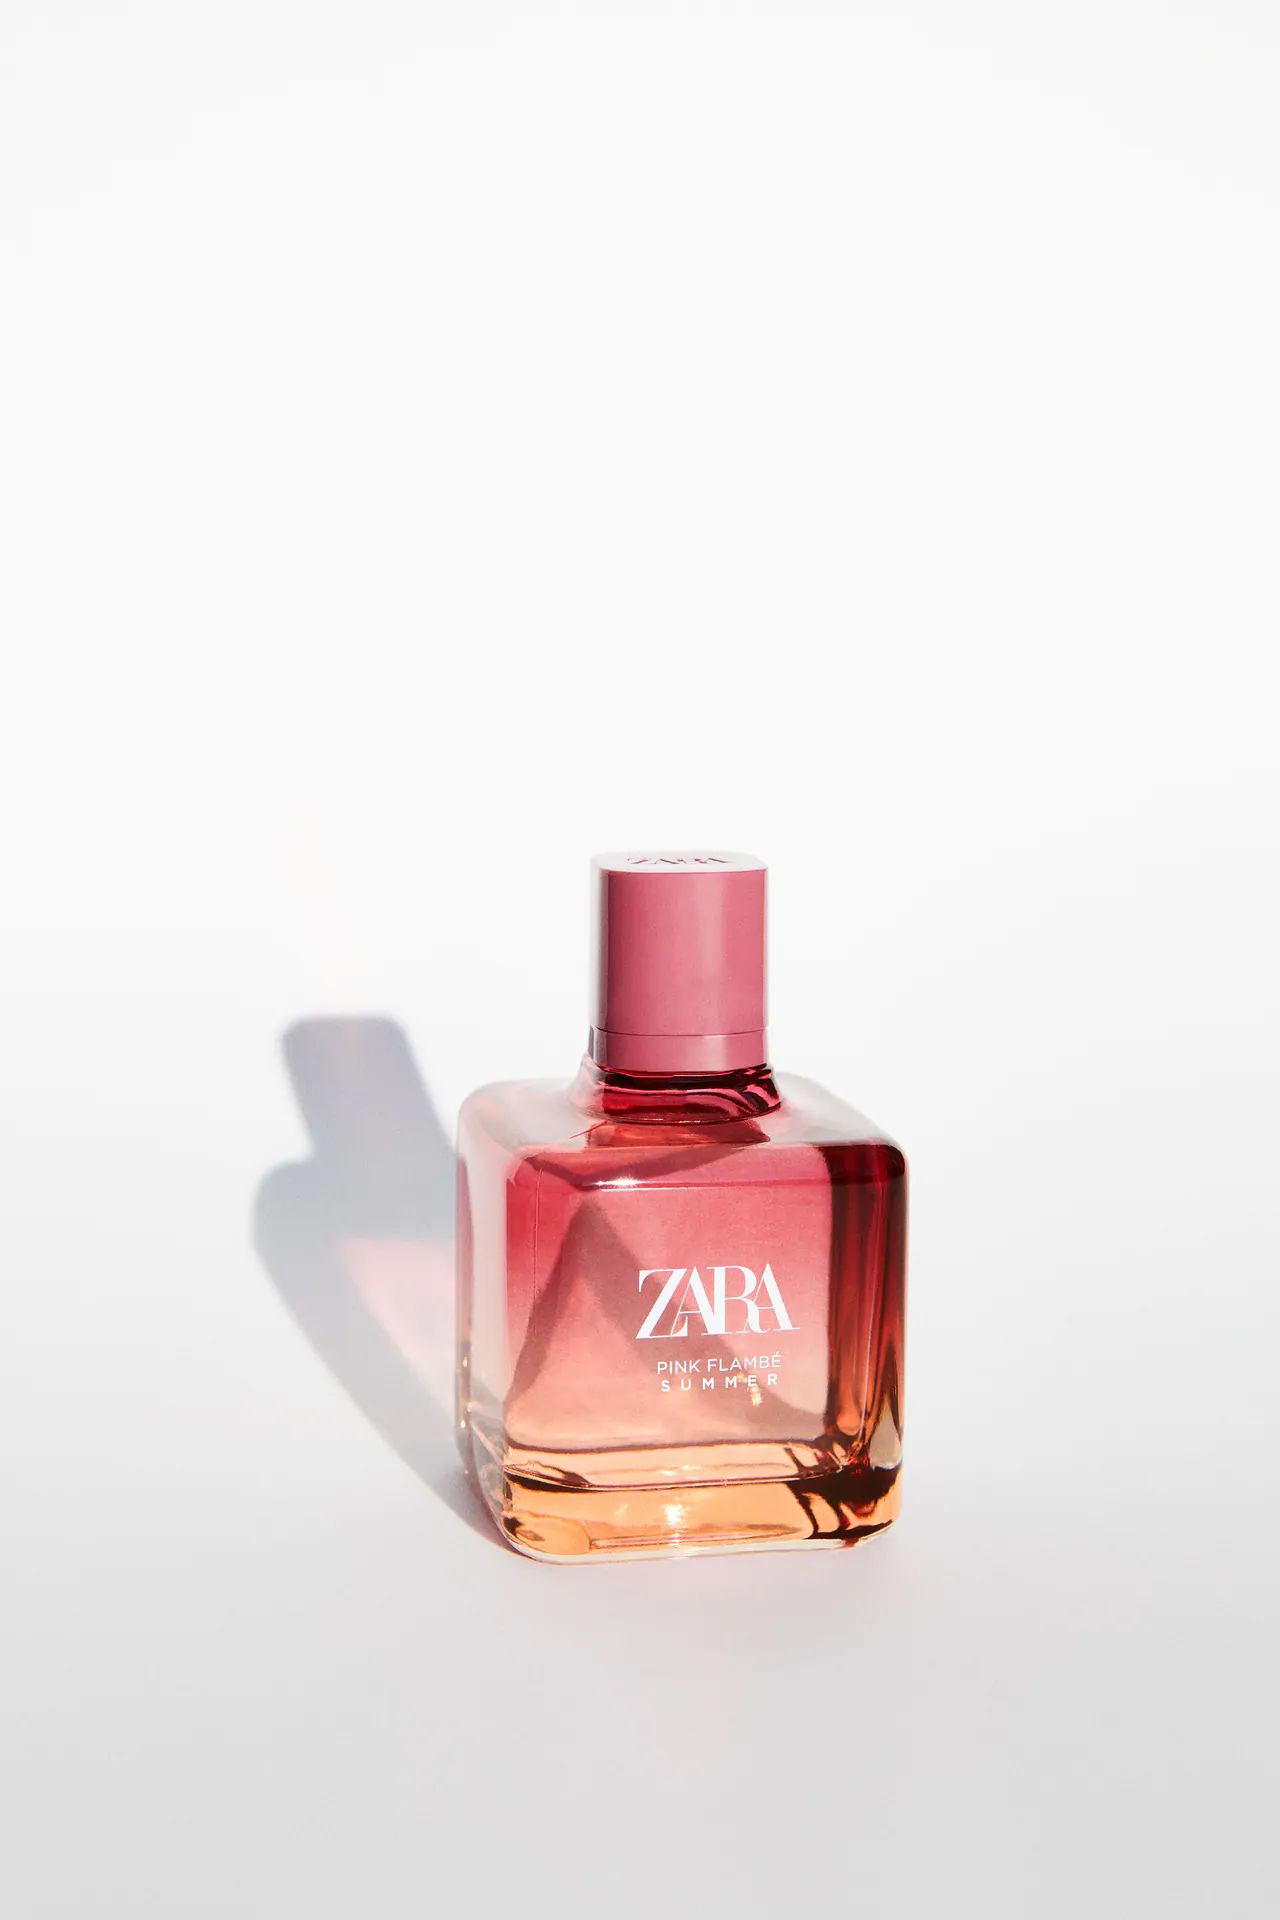 Pink Flambe Summer Zara parfum - un nouveau parfum pour femme 2021